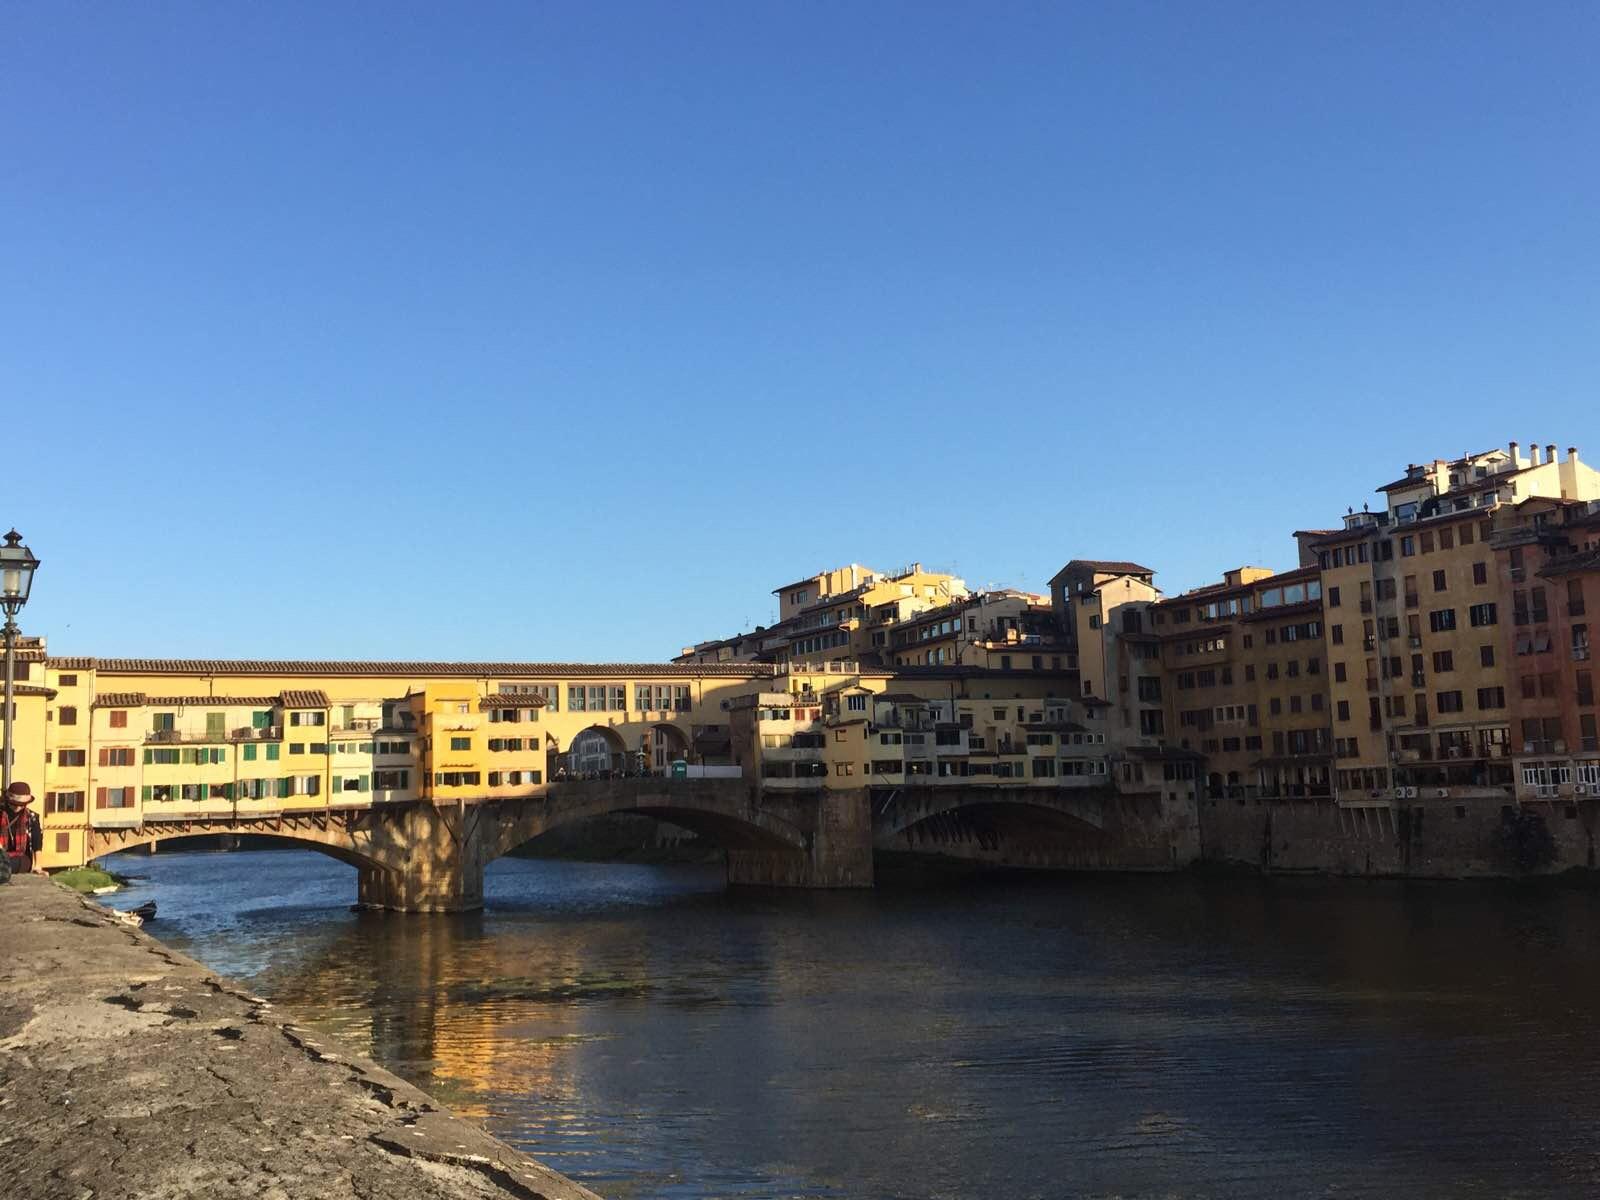 【携程攻略】佛罗伦萨老桥景点,老桥 这座建在阿诺河上最著名最古老的